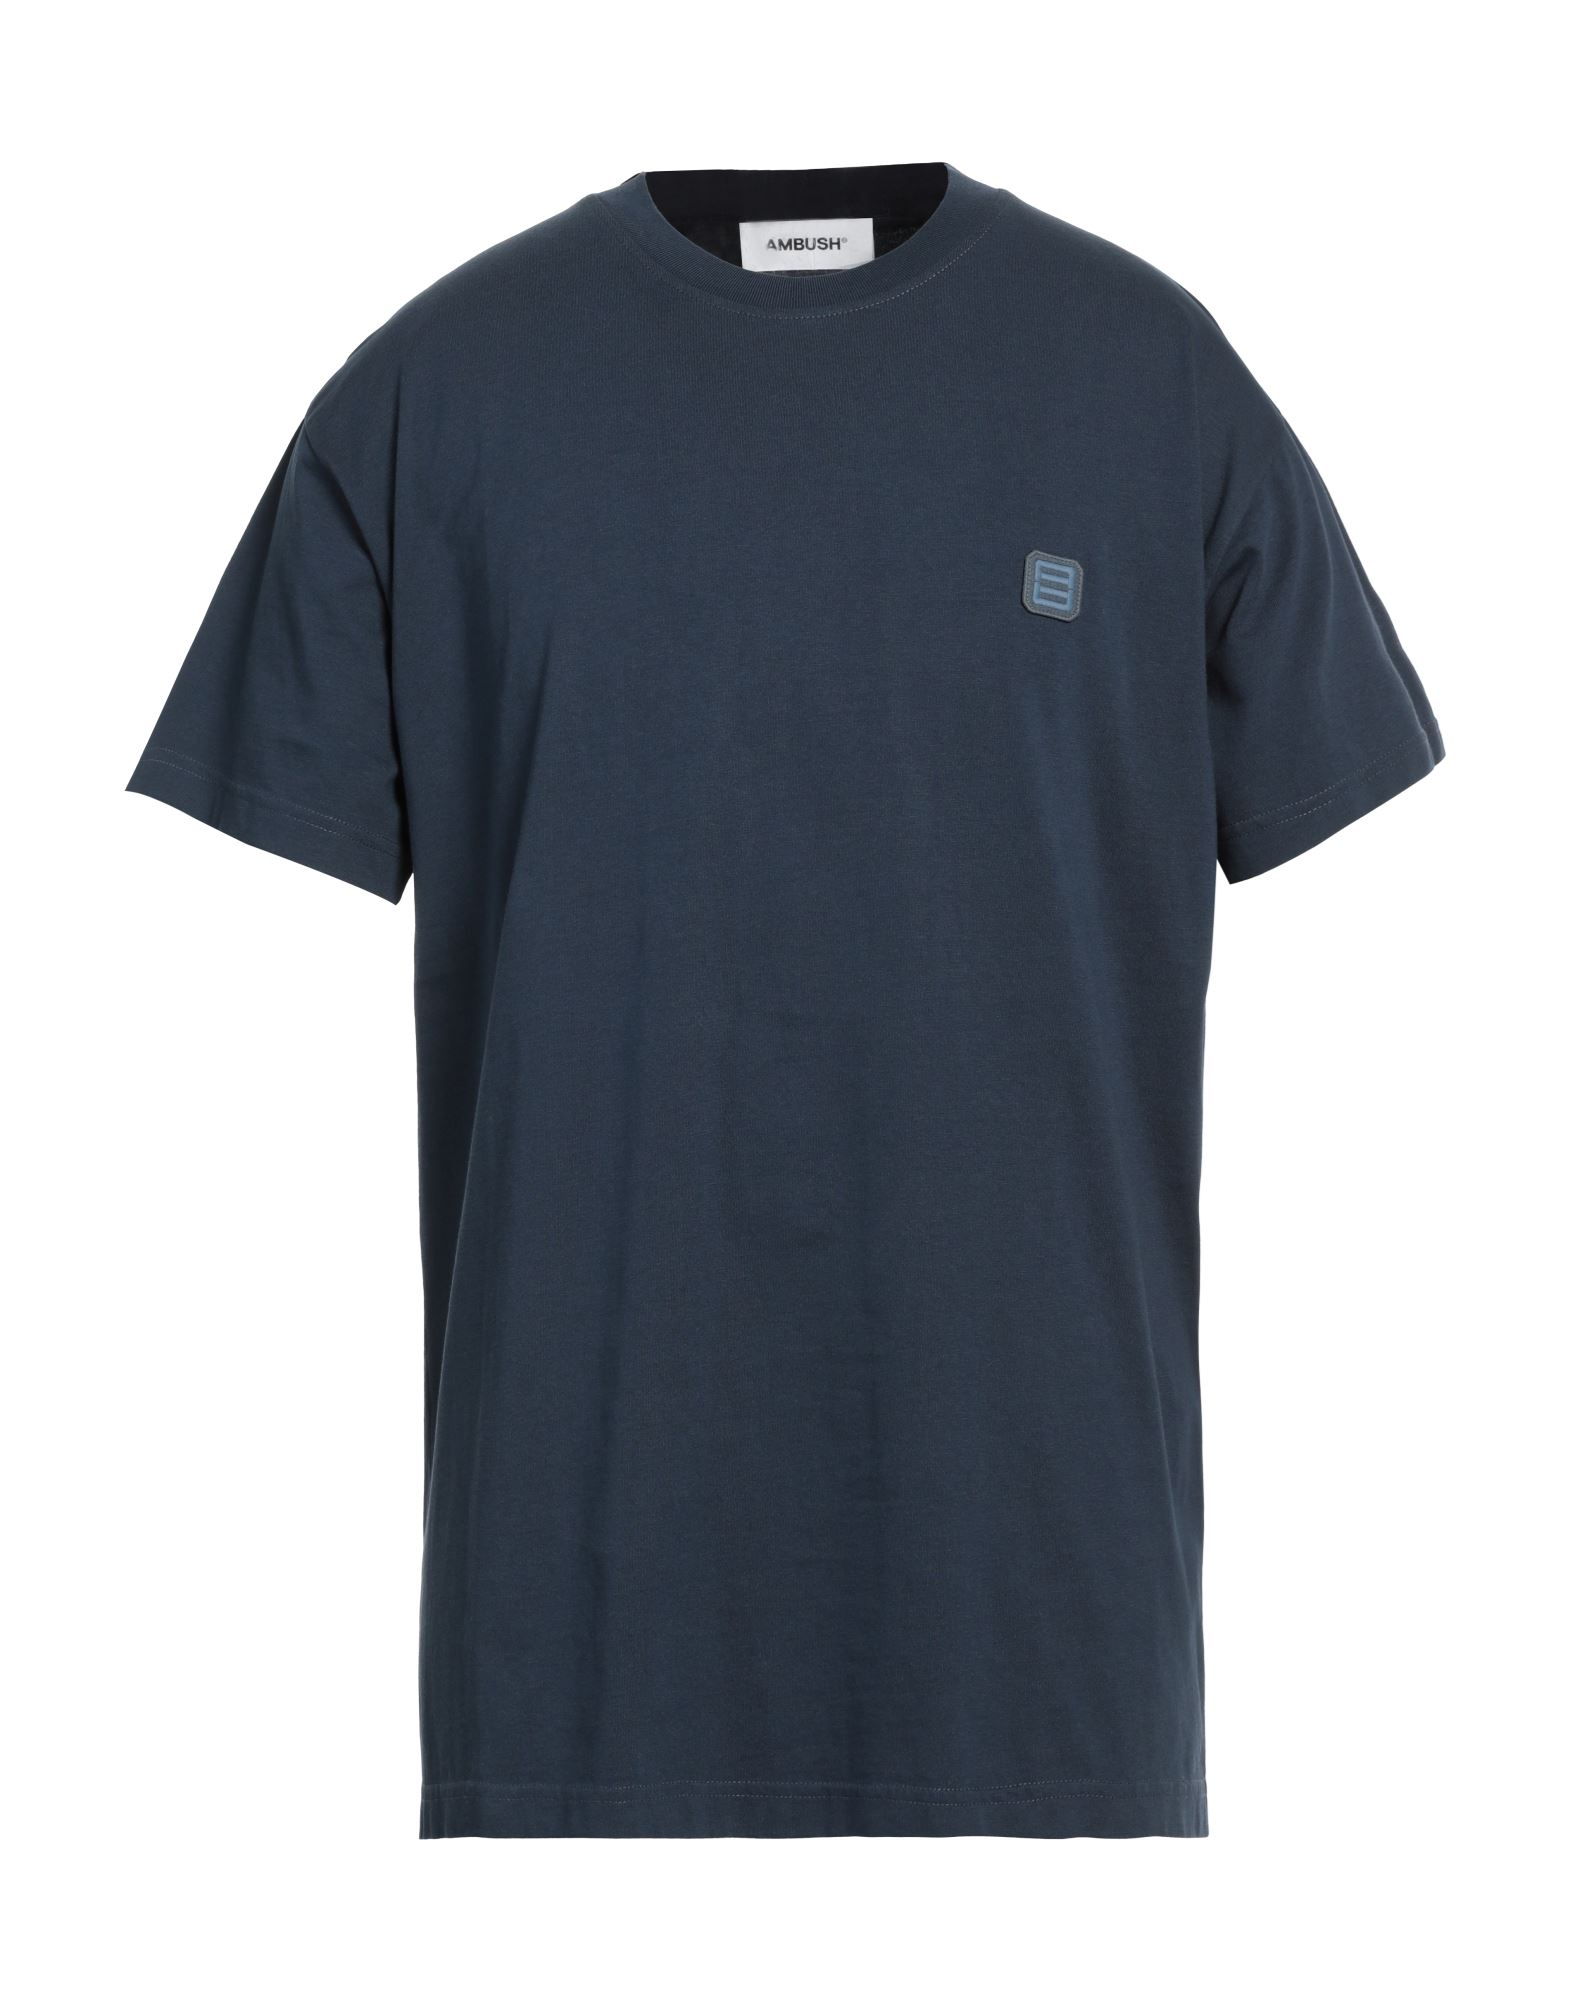 AMBUSH T-shirts Herren Marineblau von AMBUSH